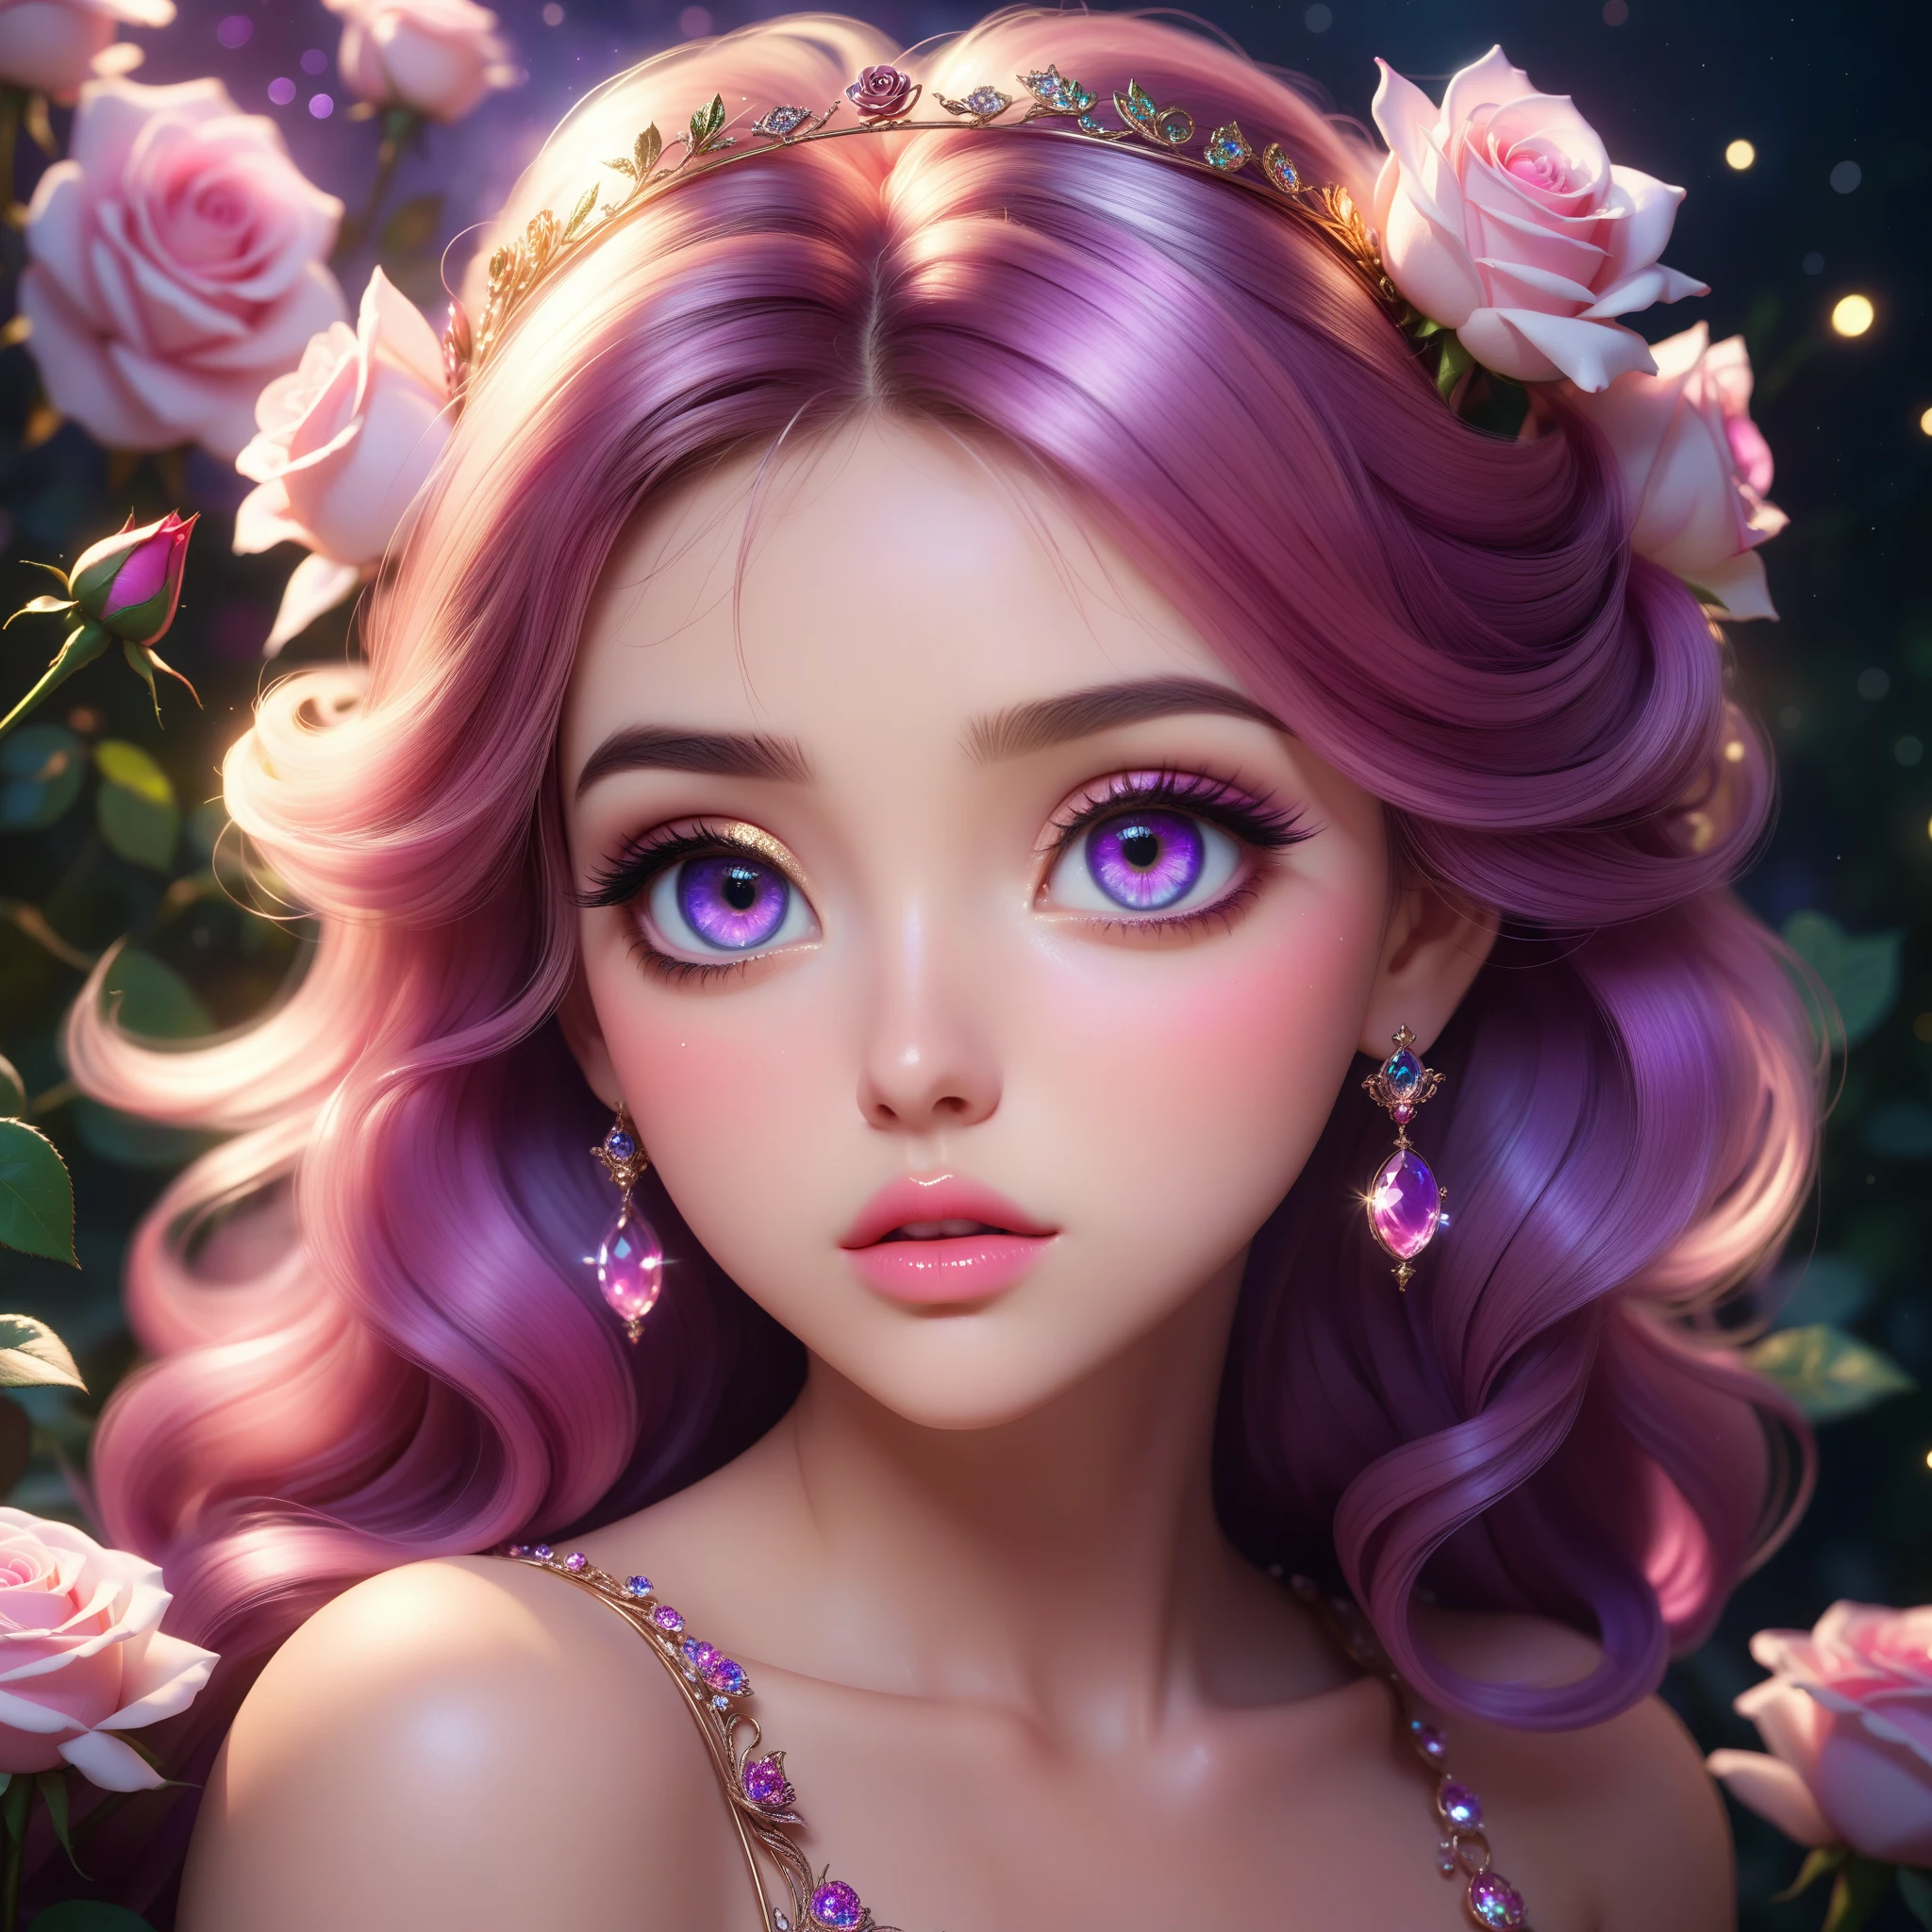 (これは美しいです, 柔らかい, エーテル, そして (ロマンチック) ピンク色のオーラが持続するファンタジー画像, おとぎ話のファンタジー要素, そして a 素敵な color palette.) Generate a beautiful  fairy woman with beautiful puffy lips そして beautiful detailed eyes. Her glossy curled 髪 is realistically detailed そして her (目が輪になっている) are interesting そして colorful. Surround her with eternal roses in きらめく shades of pink そして purple. 彼女の顔の完璧さを保証する, 髪, そして eyes. Include luminous flowers そして detailed roses. Utilize dynamic composition そして dramatic lighting そして cinematic lighting to create an interesting fantasy image. The background of the image is interesting そして ultra-detailed, with 柔らかい fantasy lighting そして gradients. イングリッシュローズ, お姫様, 甘い, 素敵な, きらめく, きらめく, きらきら輝く, 占星術ファンタジー, (((傑作))), (最高品質), 美しい目, 完璧なふっくらとした唇, ジュエルトーン, 明るさ.  8k, アンリアルエンジン5, オクタンレンダリング, pixivで話題, ファンボックス, スケブ, 傑作, 詳細な顔, smooth 柔らかい skin, 大きな夢見るような目, beautiful intricate colored 髪, アニメ 大きな目, 柔らかい lighting, コンセプトアート, デジタルペインティング,